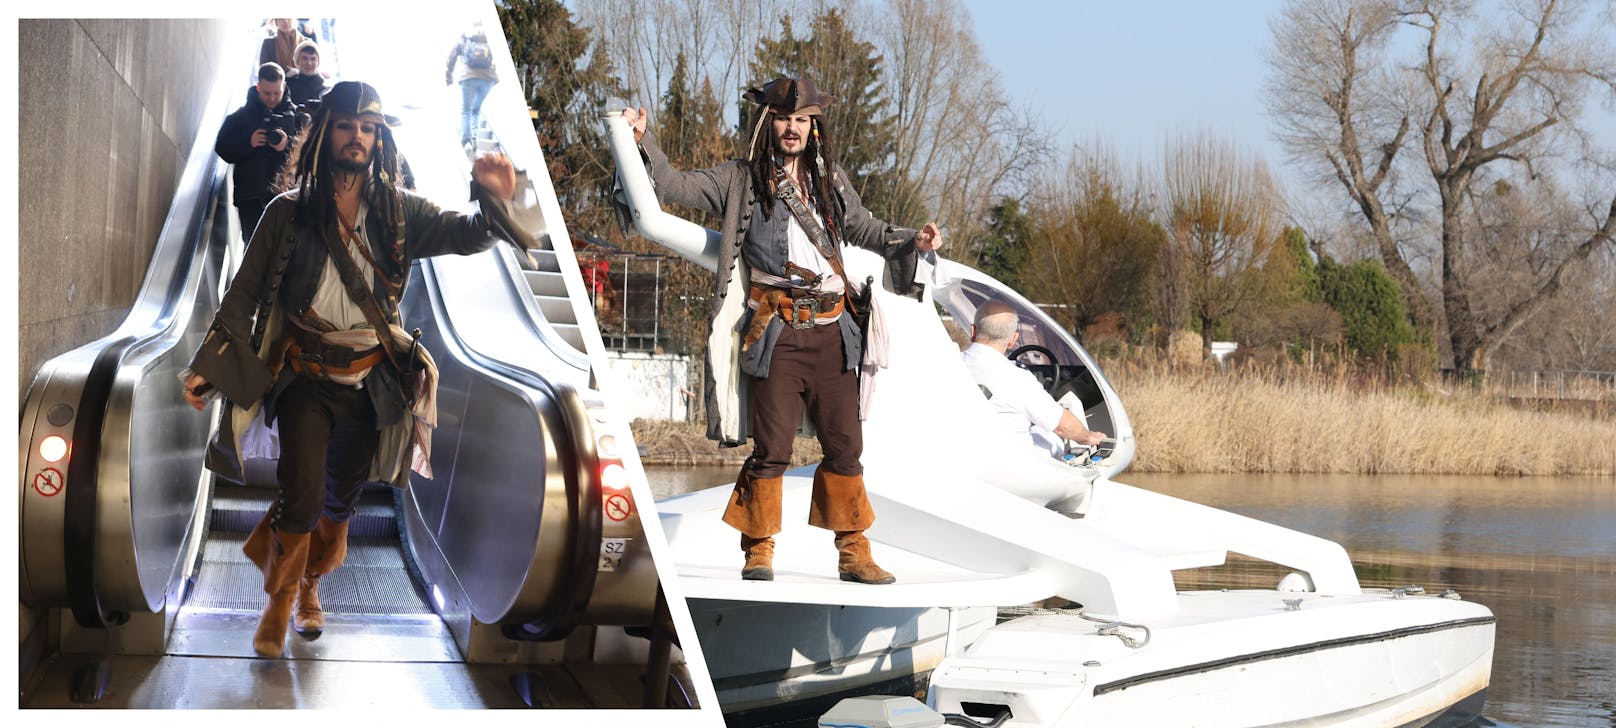 Abgefahren! Captain Jack Sparrow entert U-Bahn und Boot